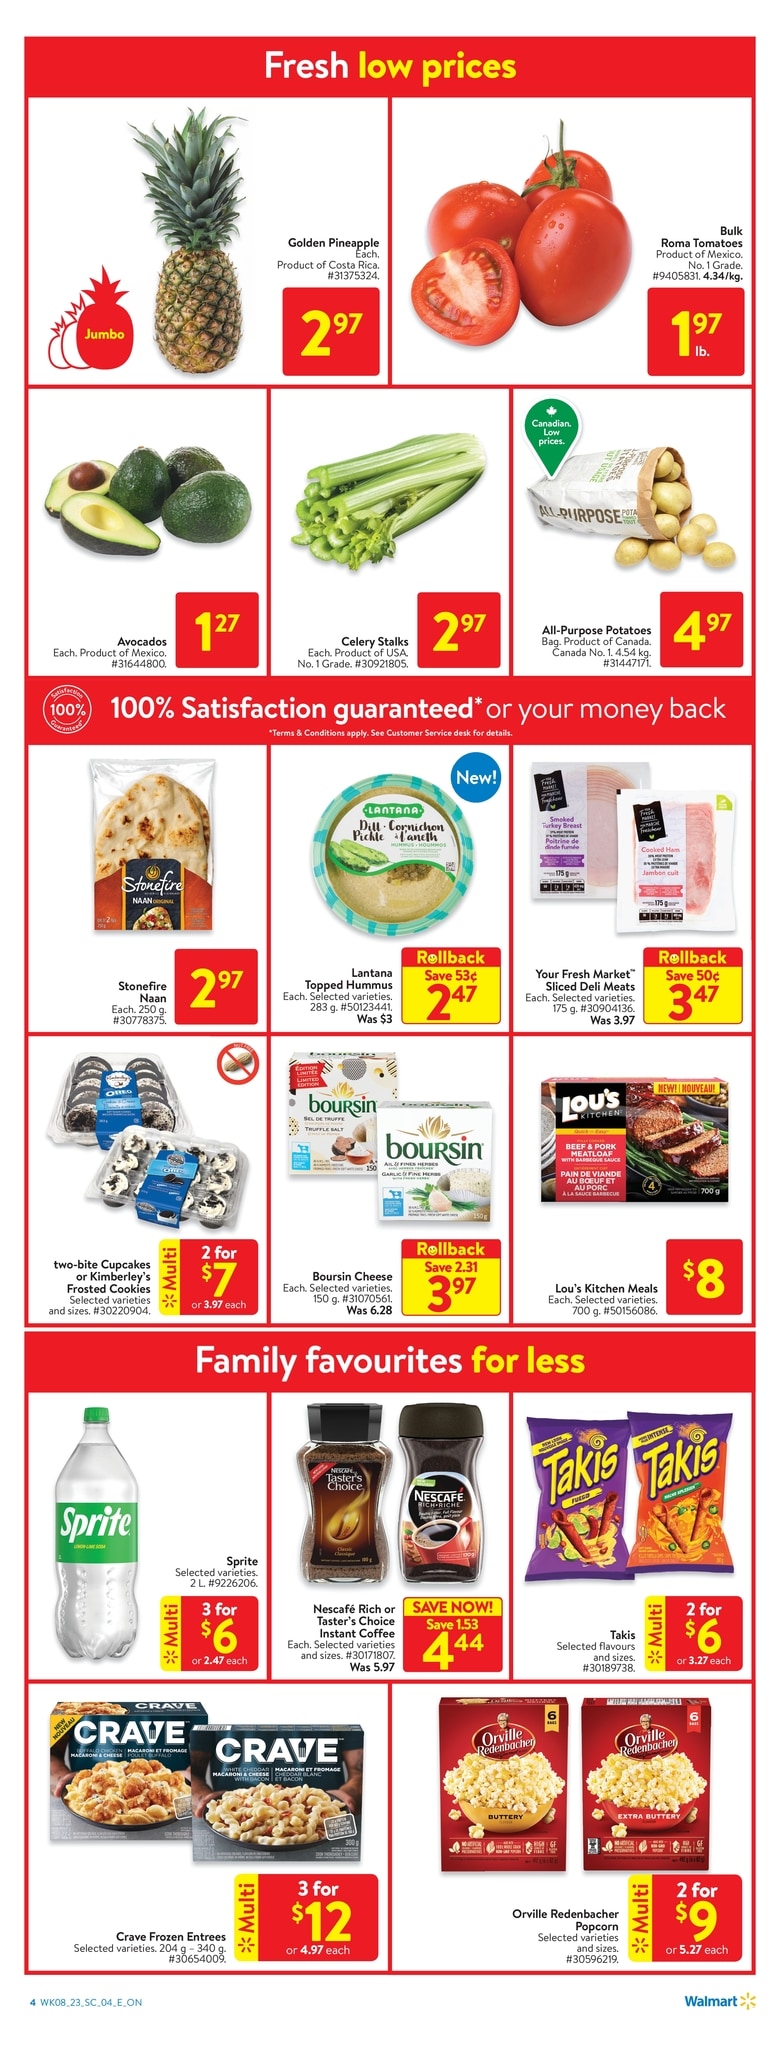 Walmart Canada - Weekly Flyer Specials - Page 7